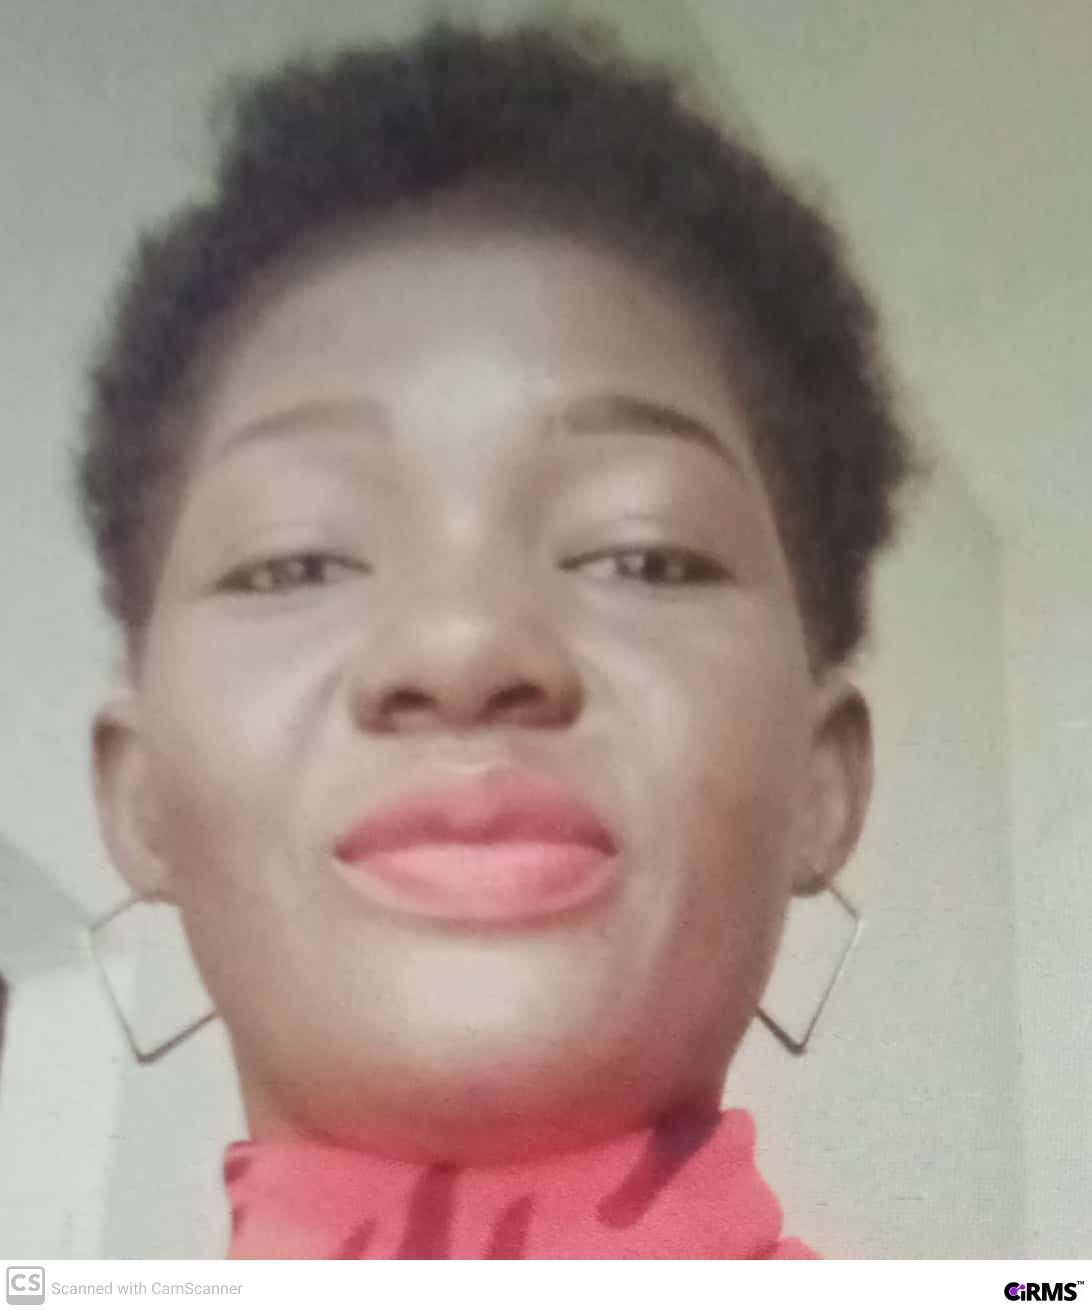 Miss. Onyinyechukwu Esther Okeke